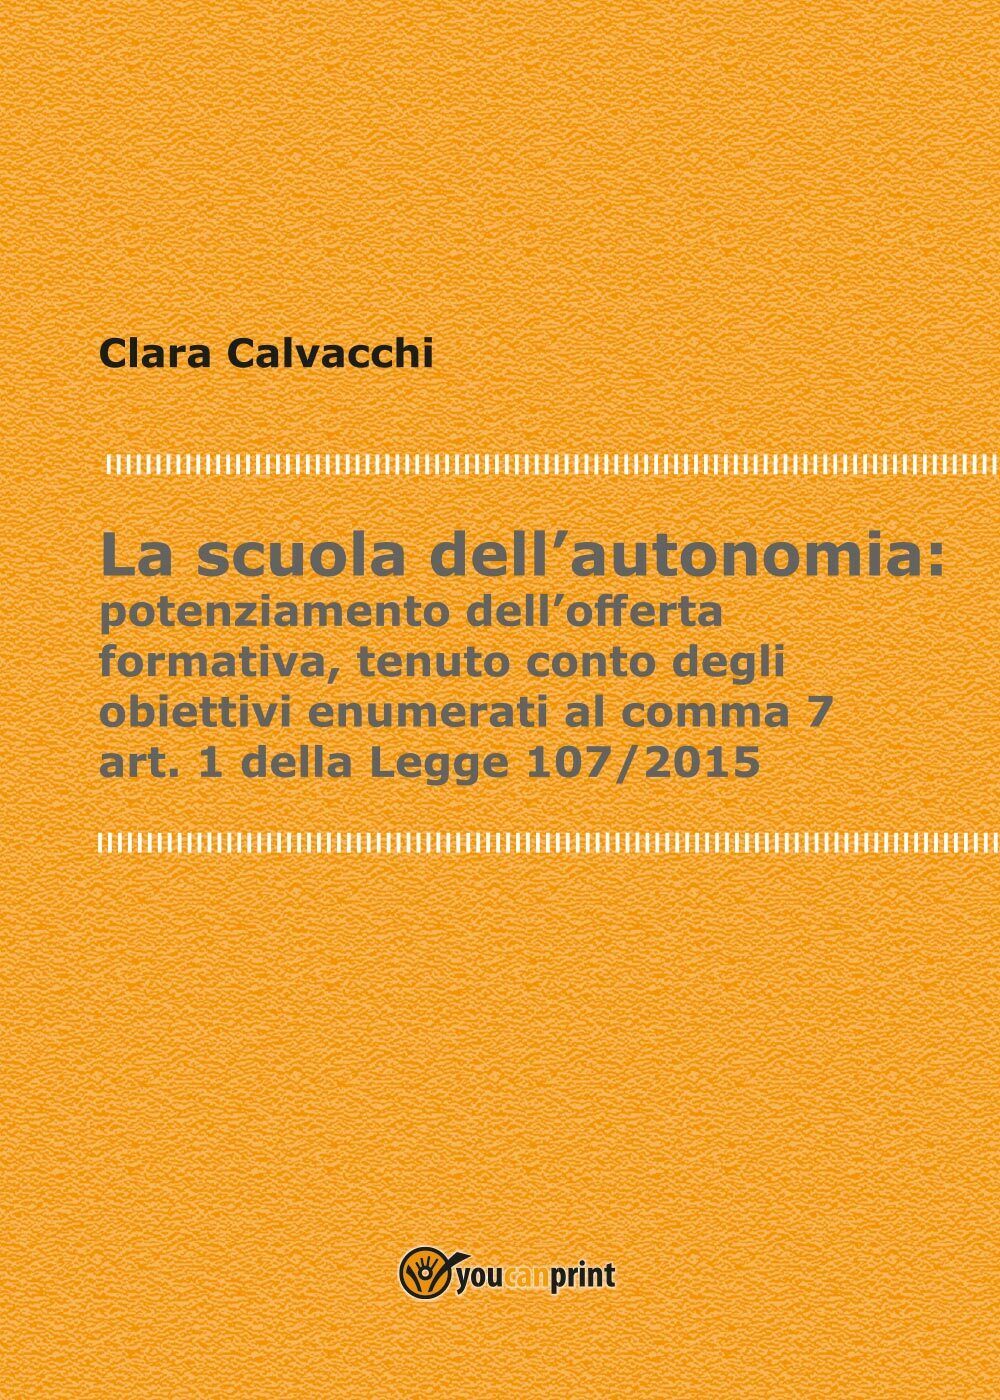 La scuola delL'autonomia:potenziamento delL'offerta formativa di Clara Calvacchi libro usato